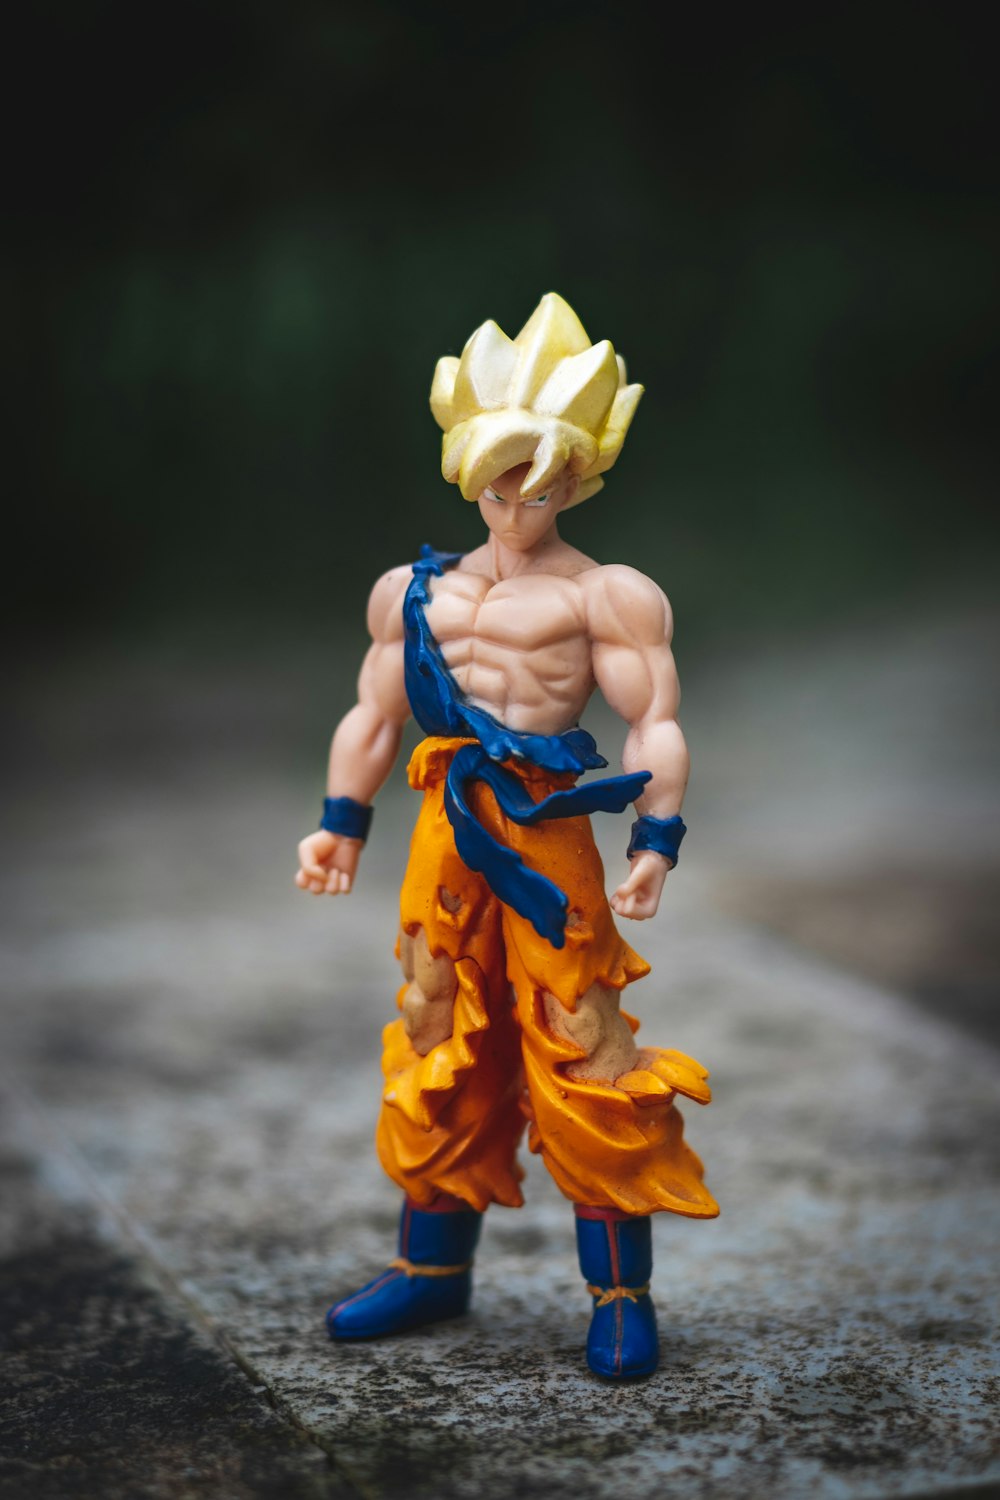 Más de 30,000 imágenes de Goku | Descargar imágenes gratis en Unsplash